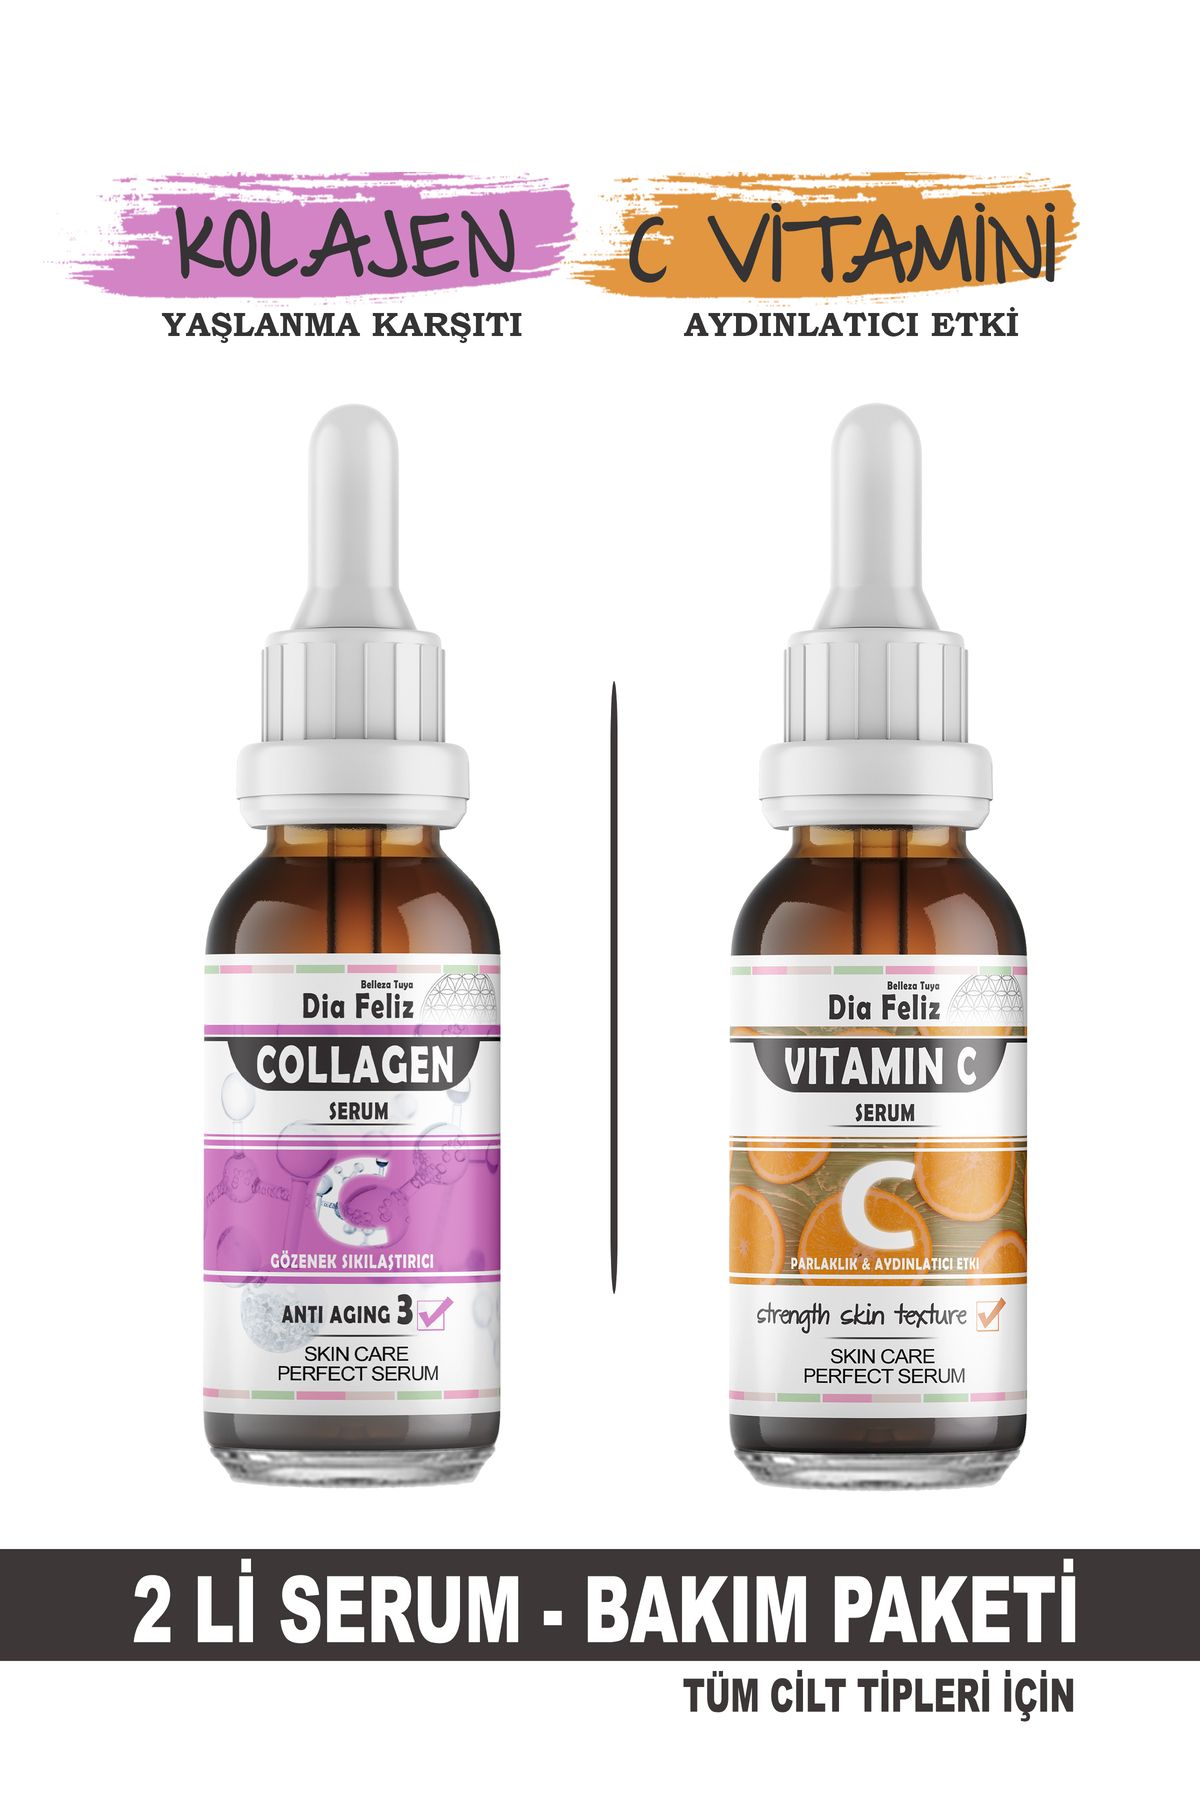 DİA FELİZ Collagen & C Vitamini Serum 2'li Serum Paketi - Aydınlatıcı - Yaşlanma Karşıtı Cilt Serumu